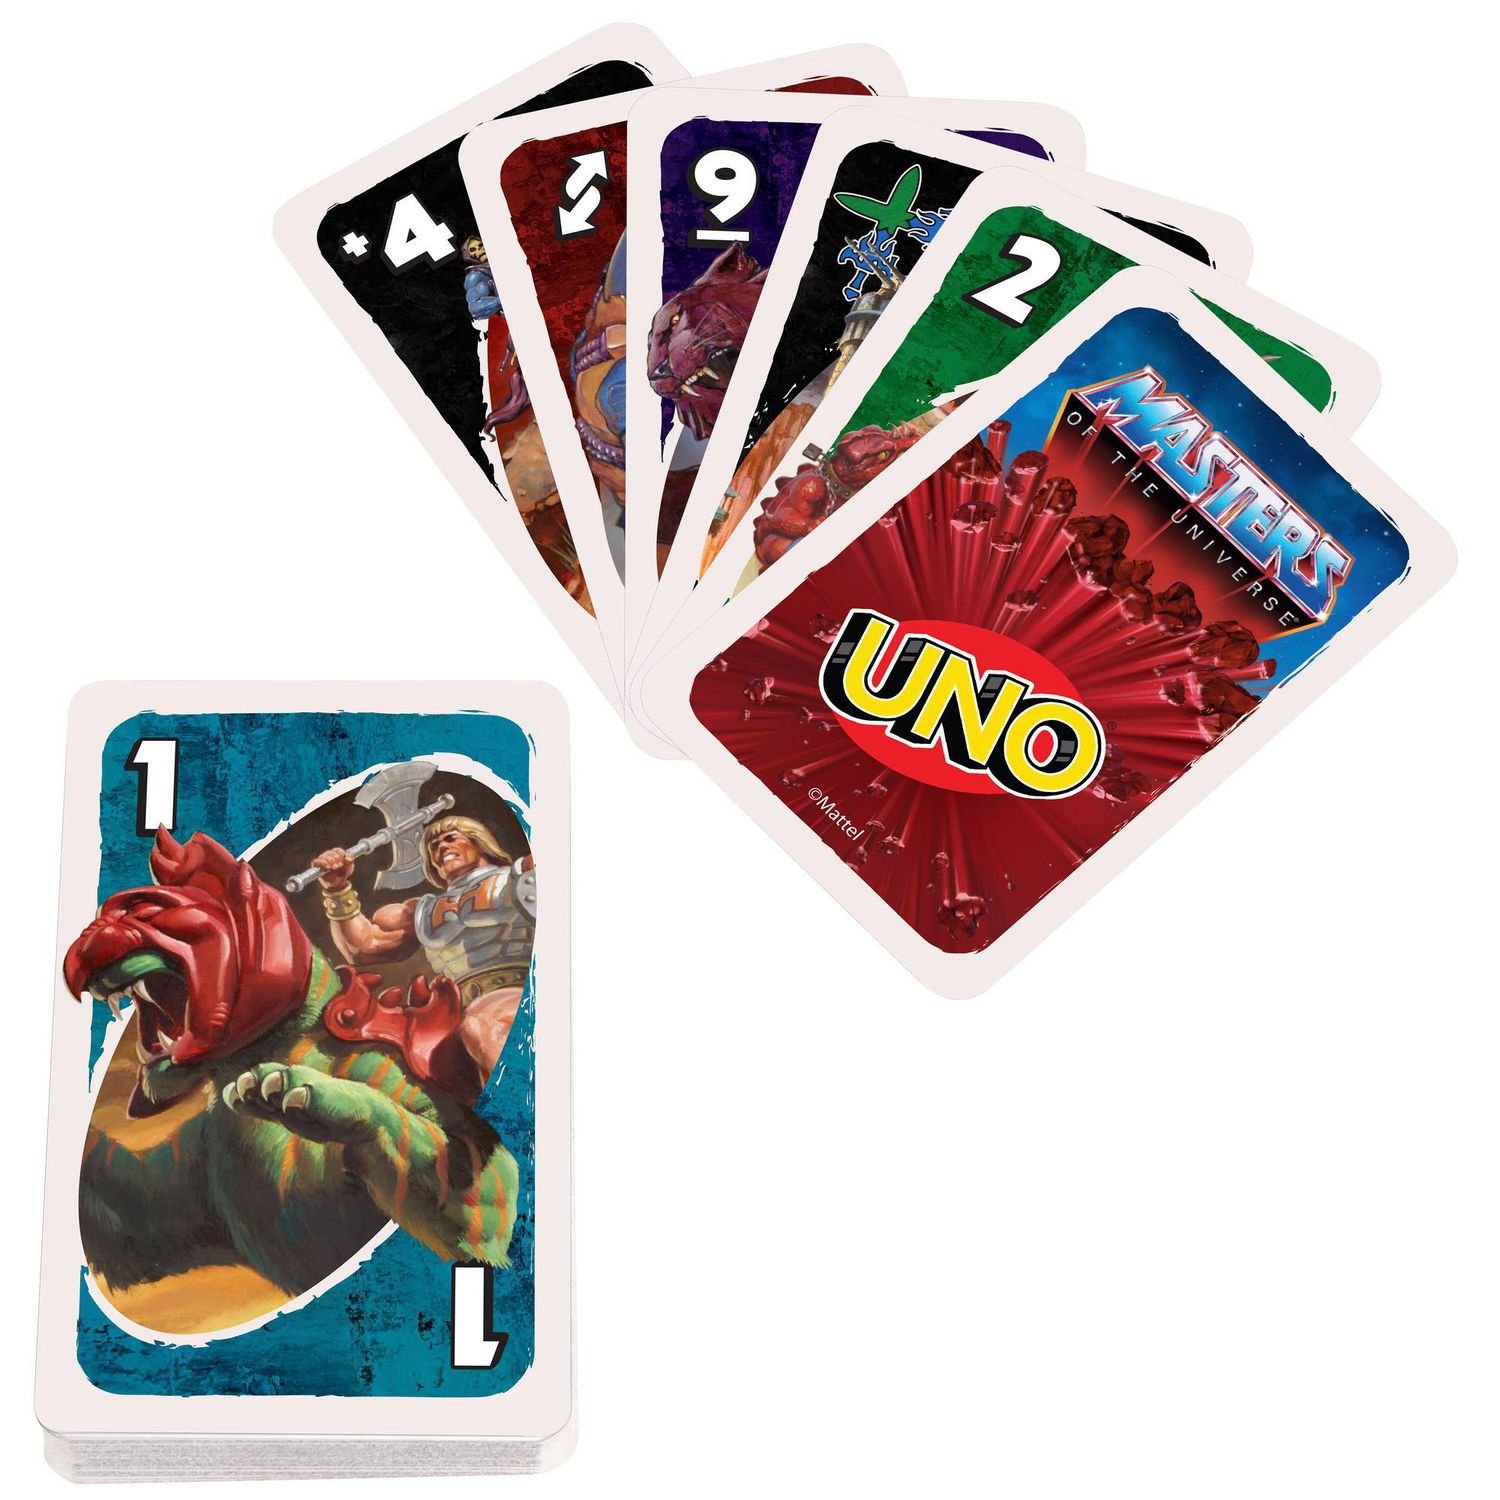 Jogo de Cartas Uno - Giant Uno